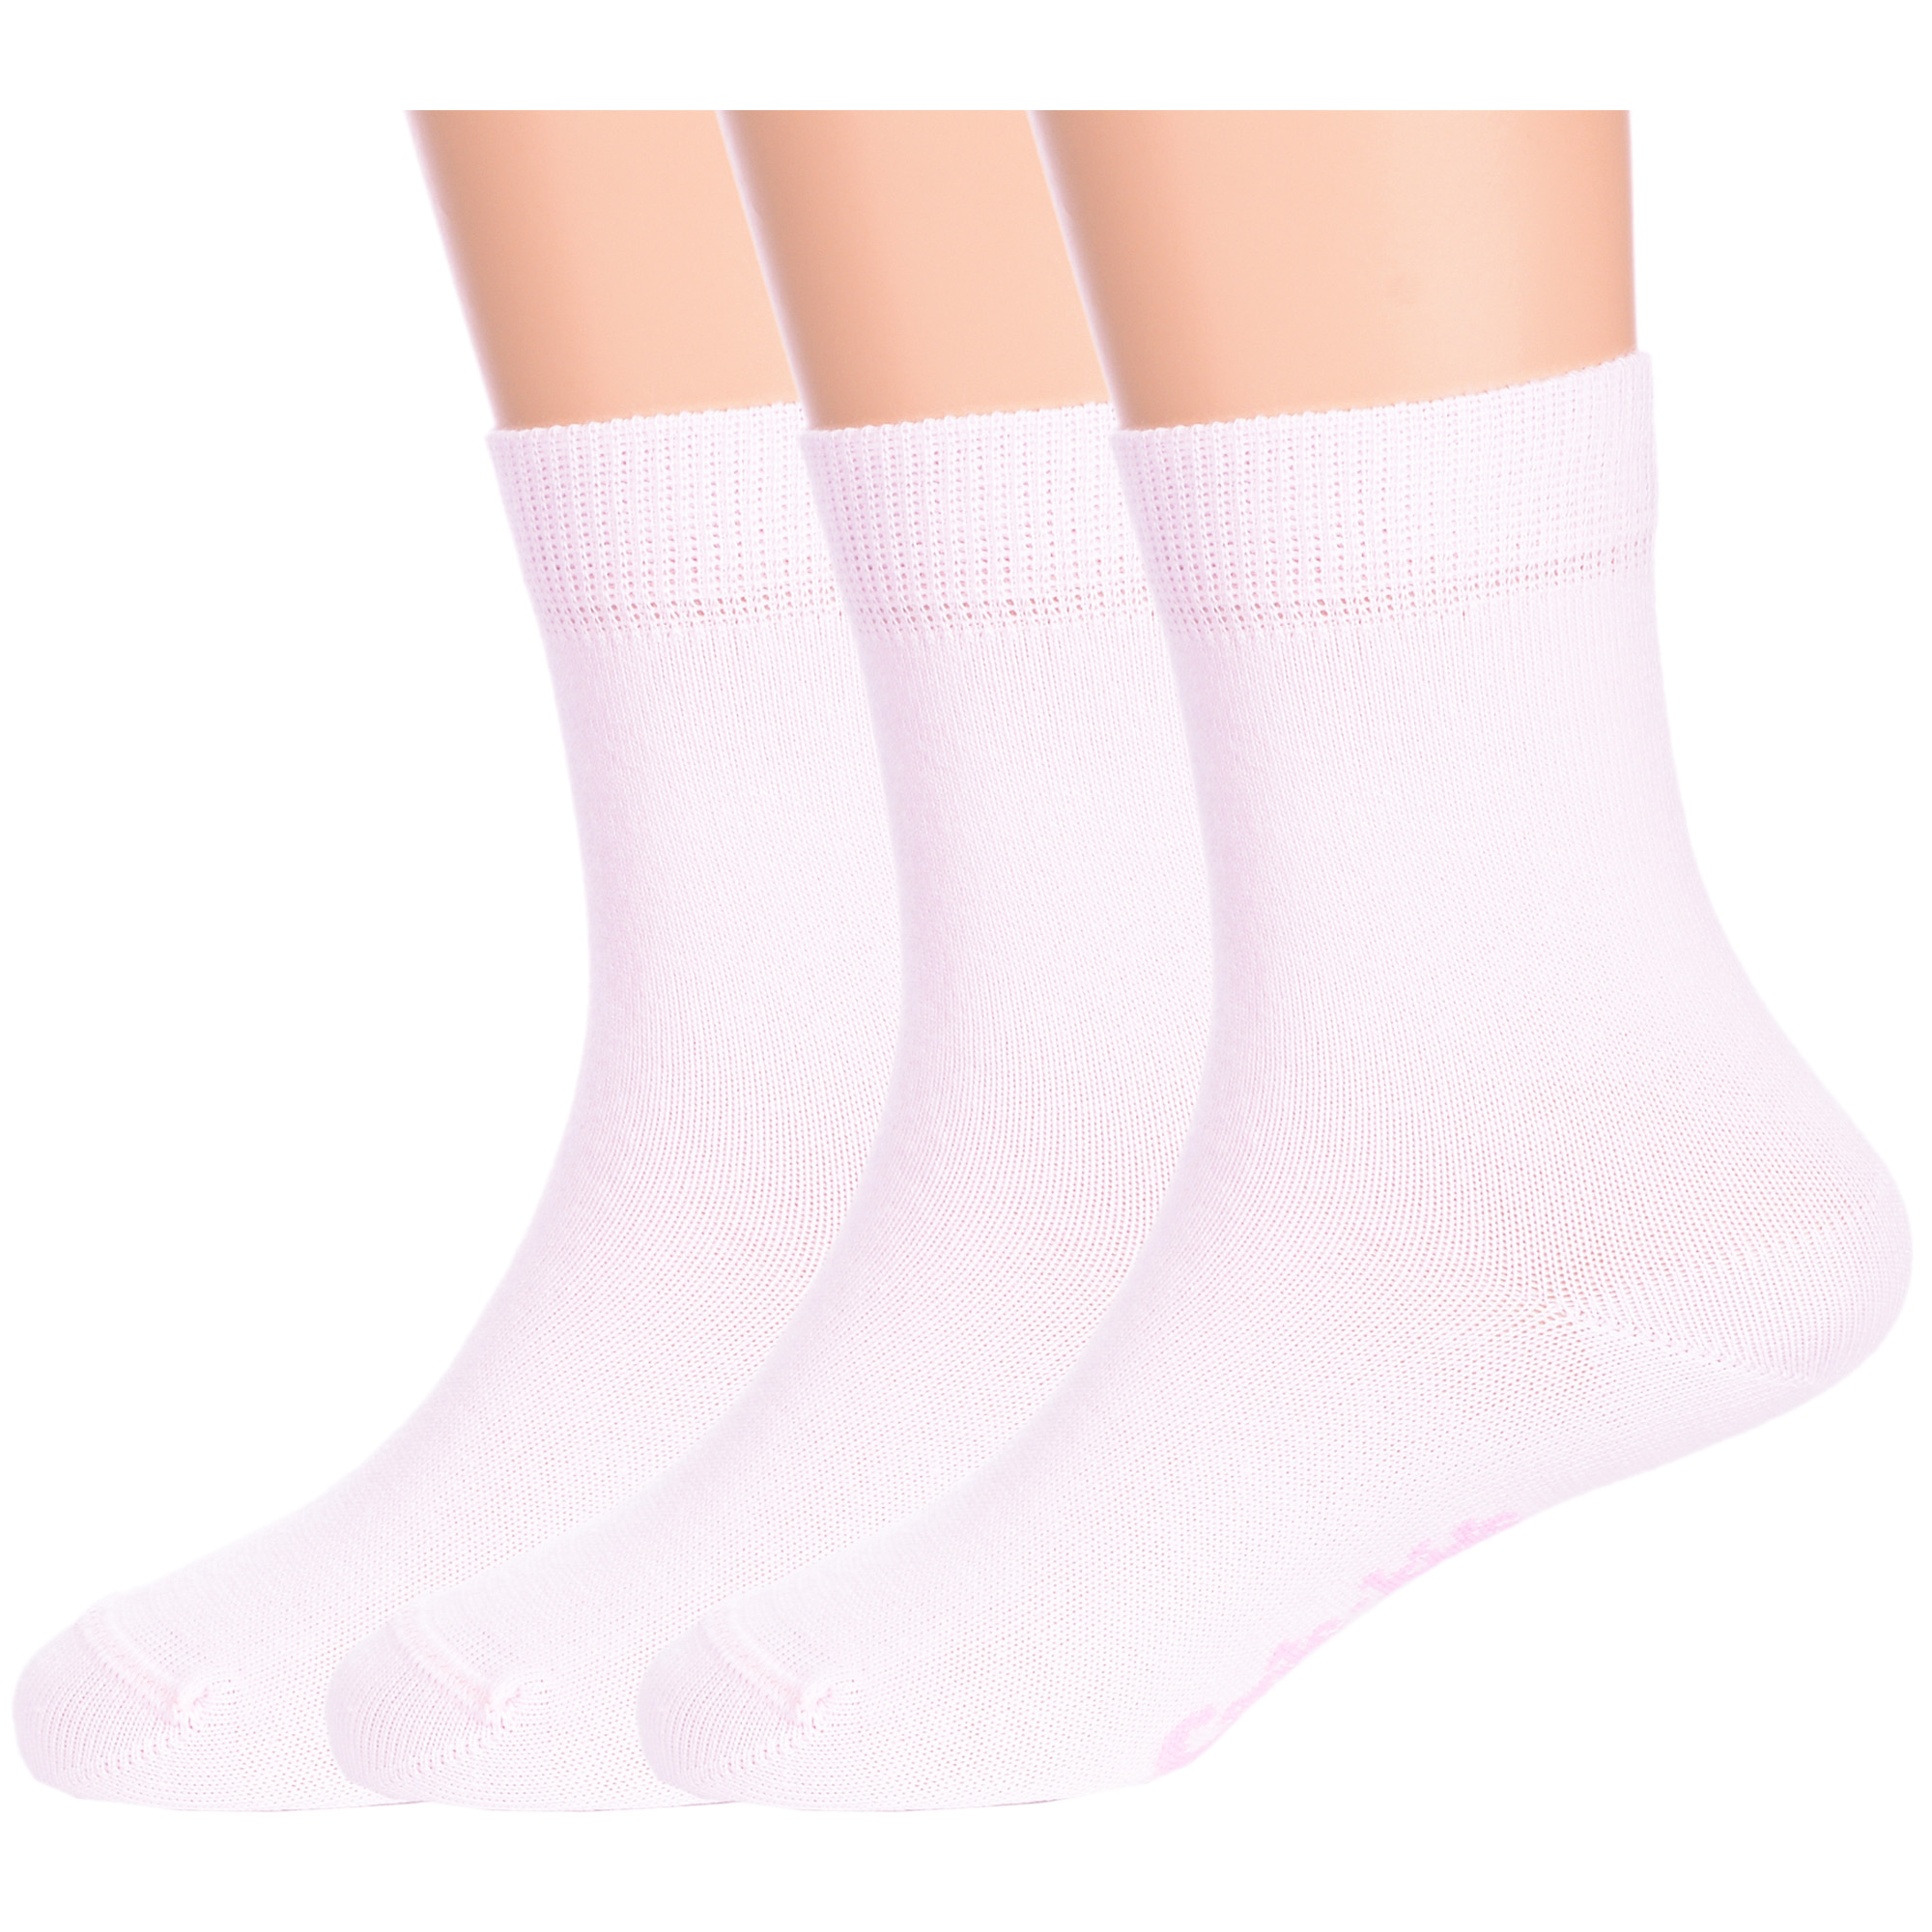 Носки детские NOSMAG 3-5С-11СП, рис. 000, бледно-розовые, 12